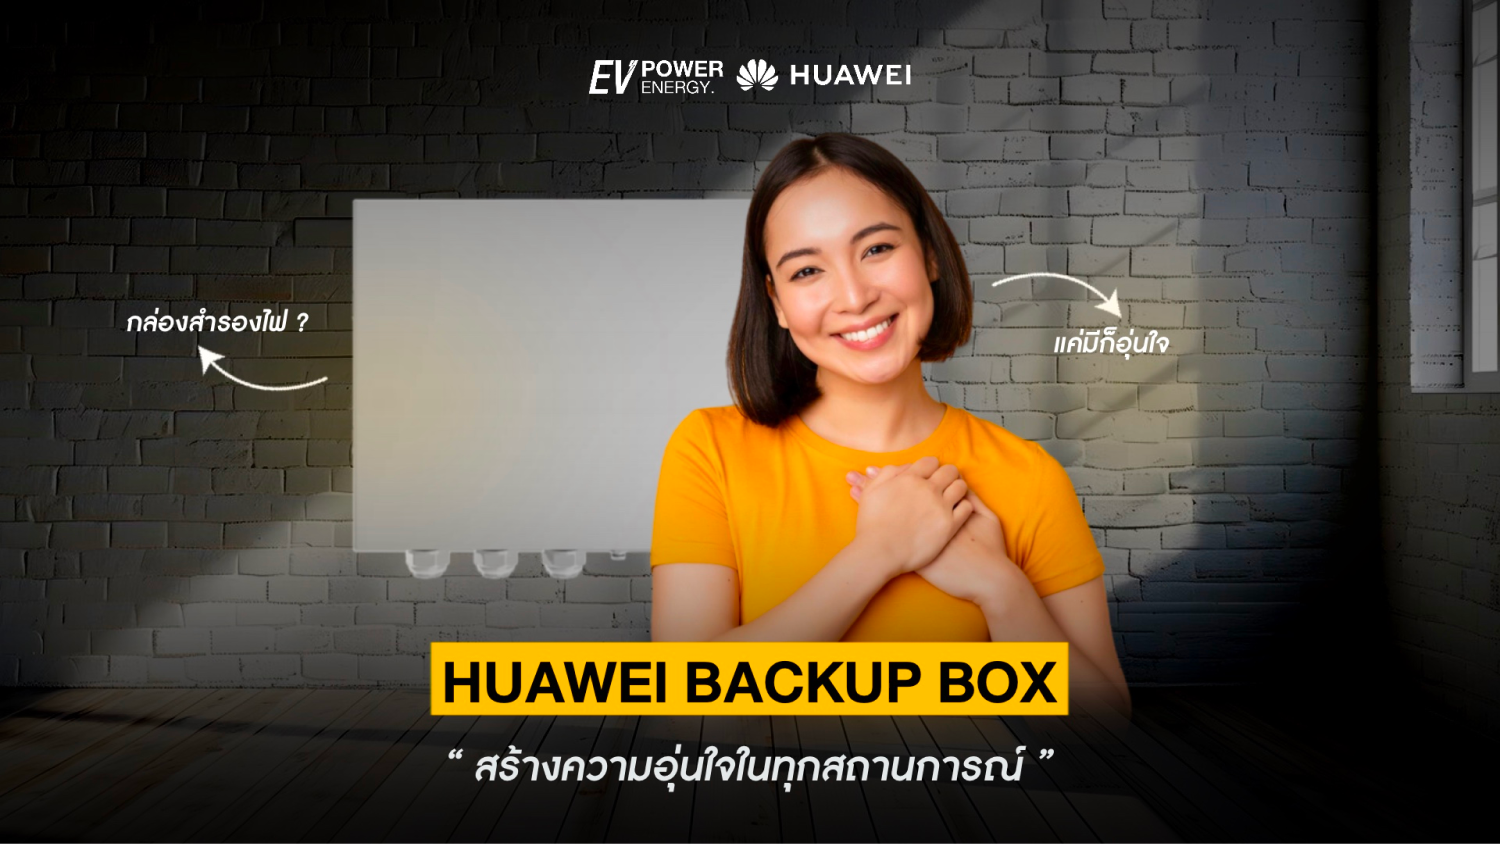 มี Huawei Backup Box อุ่นใจในทุกสถานการณ์